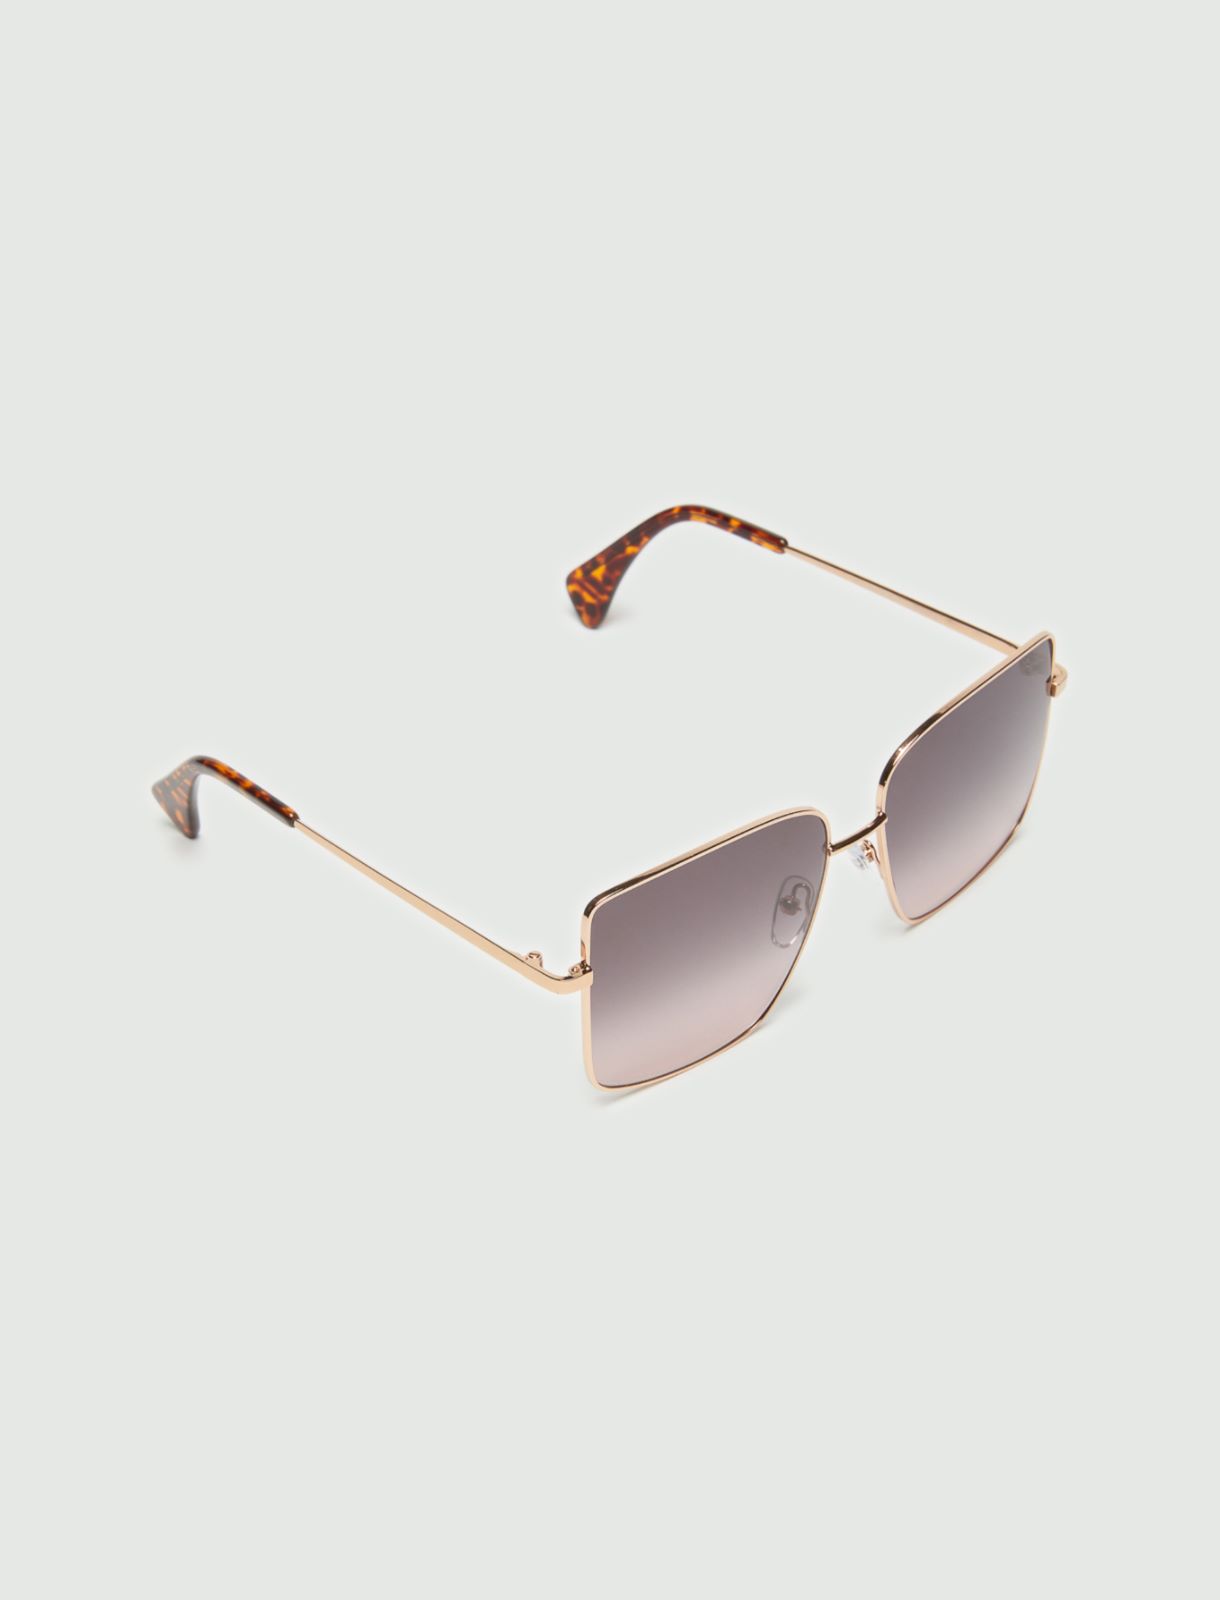 Sonnenbrille aus Metall - Terrakotta - Marella - 2